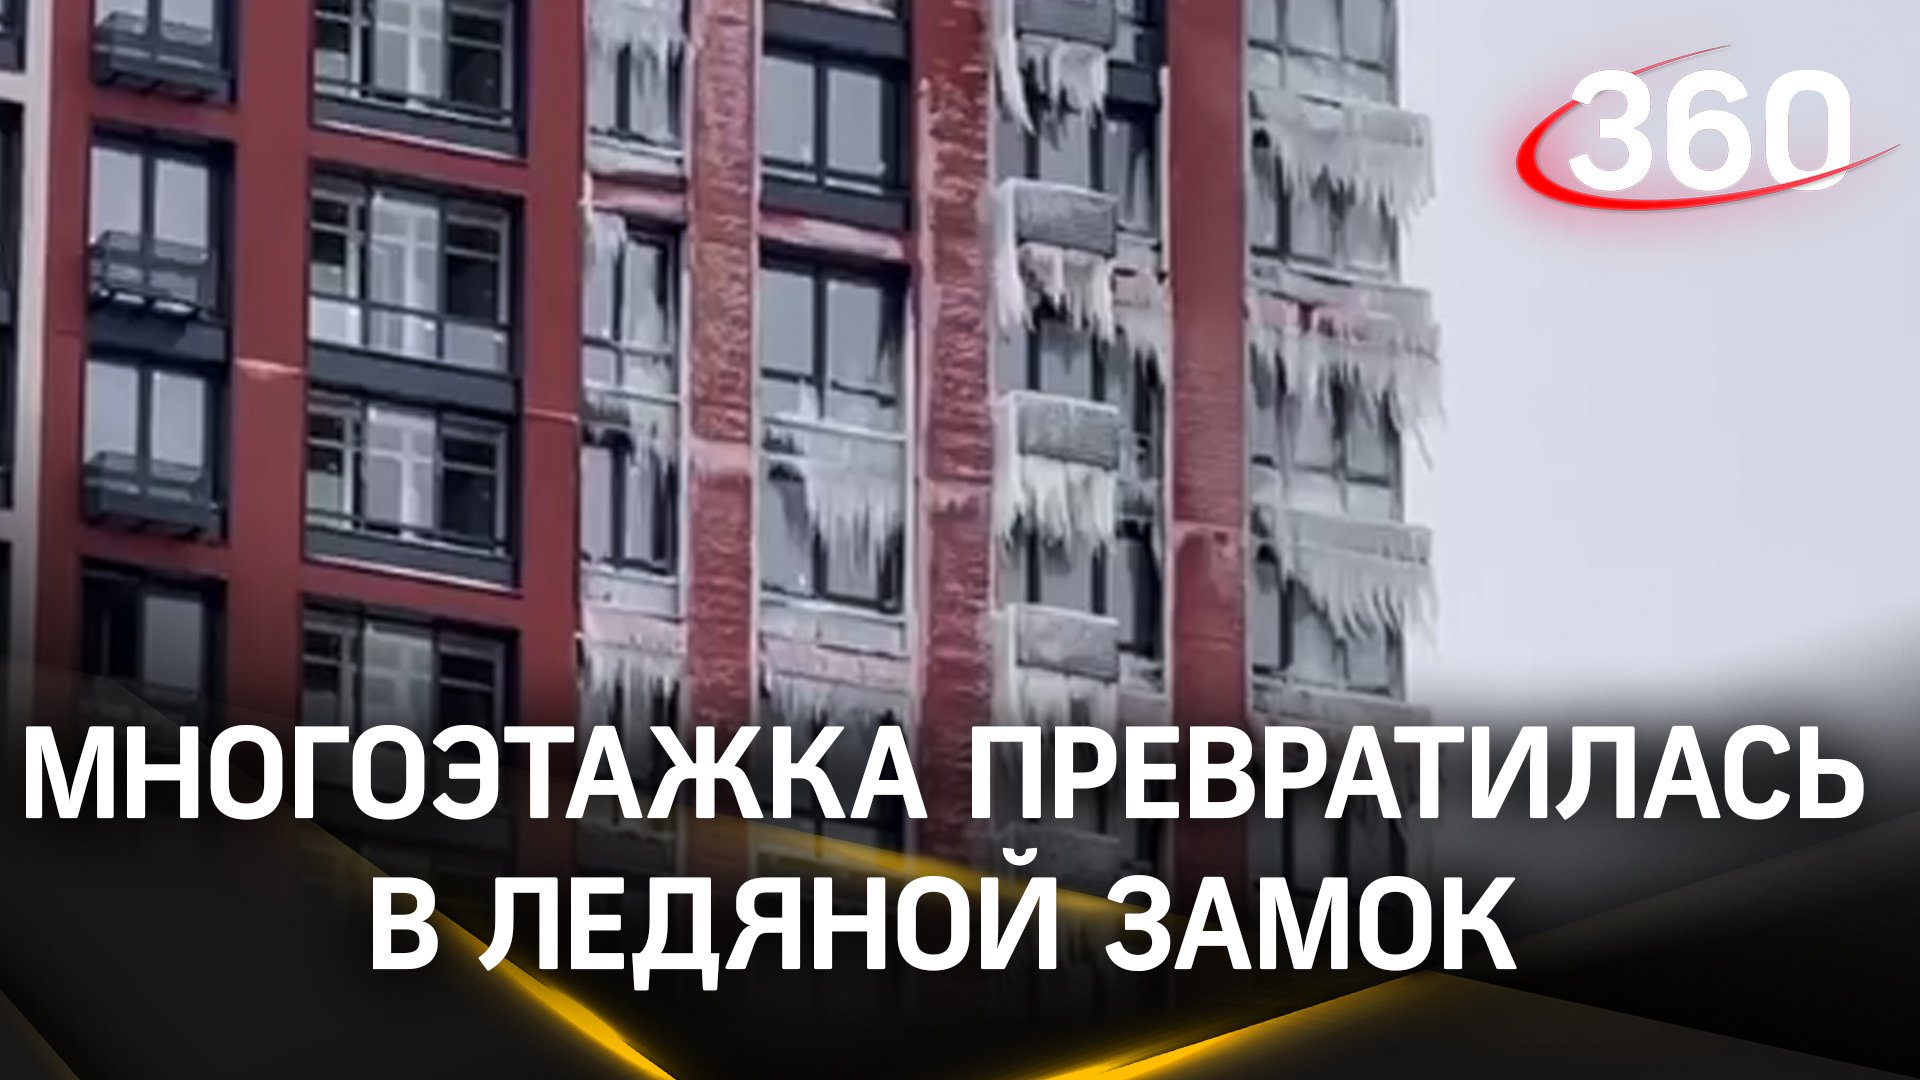 Многоэтажка превратилась в ледяной замок в Москве